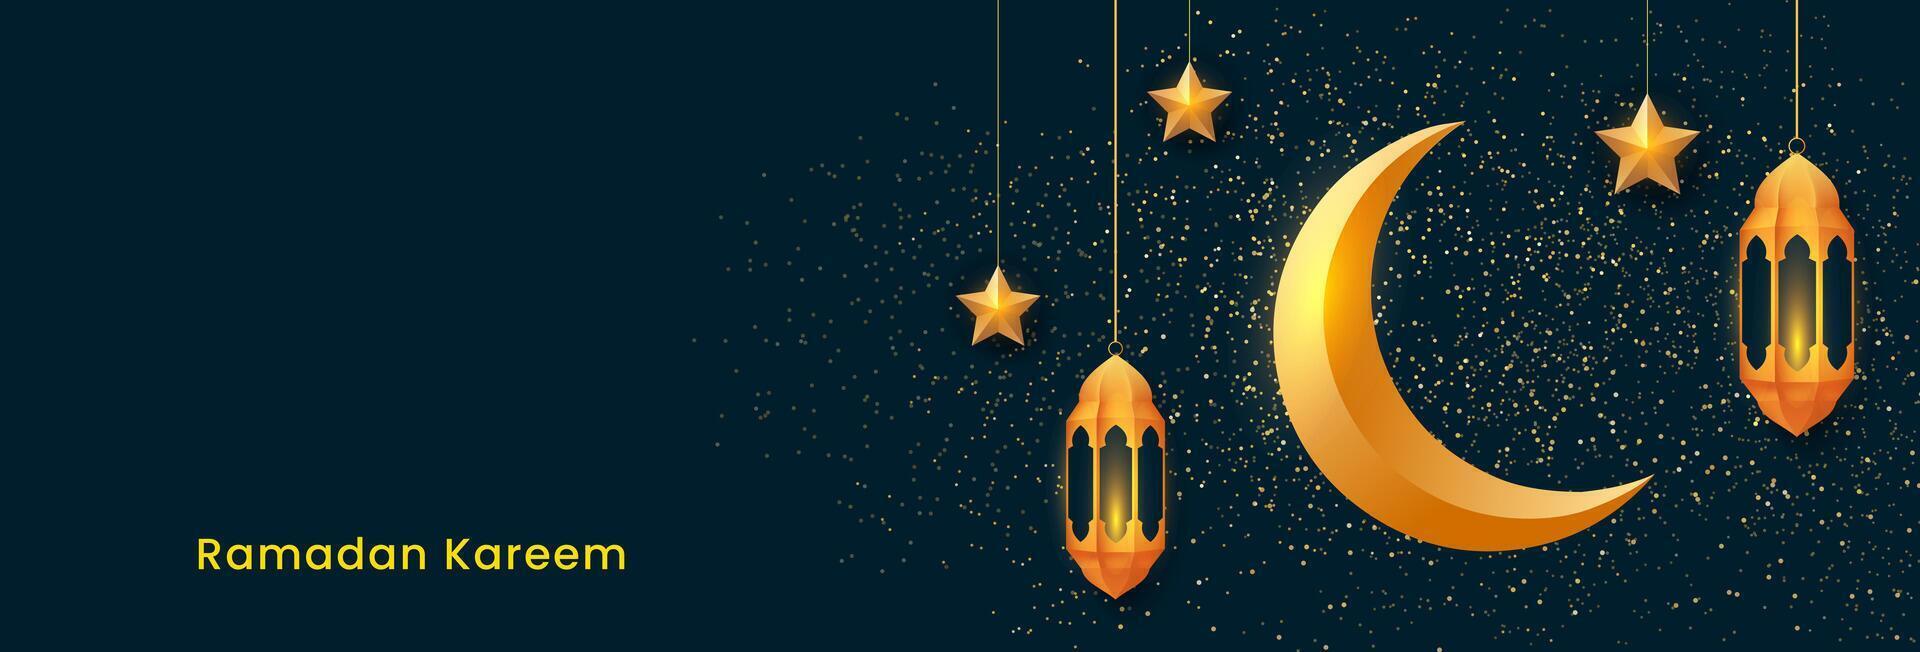 Ramadan kareem Banner Design. islamisch Hintergrund mit golden Laternen, Sterne und Halbmond Mond. Vektor Illustration